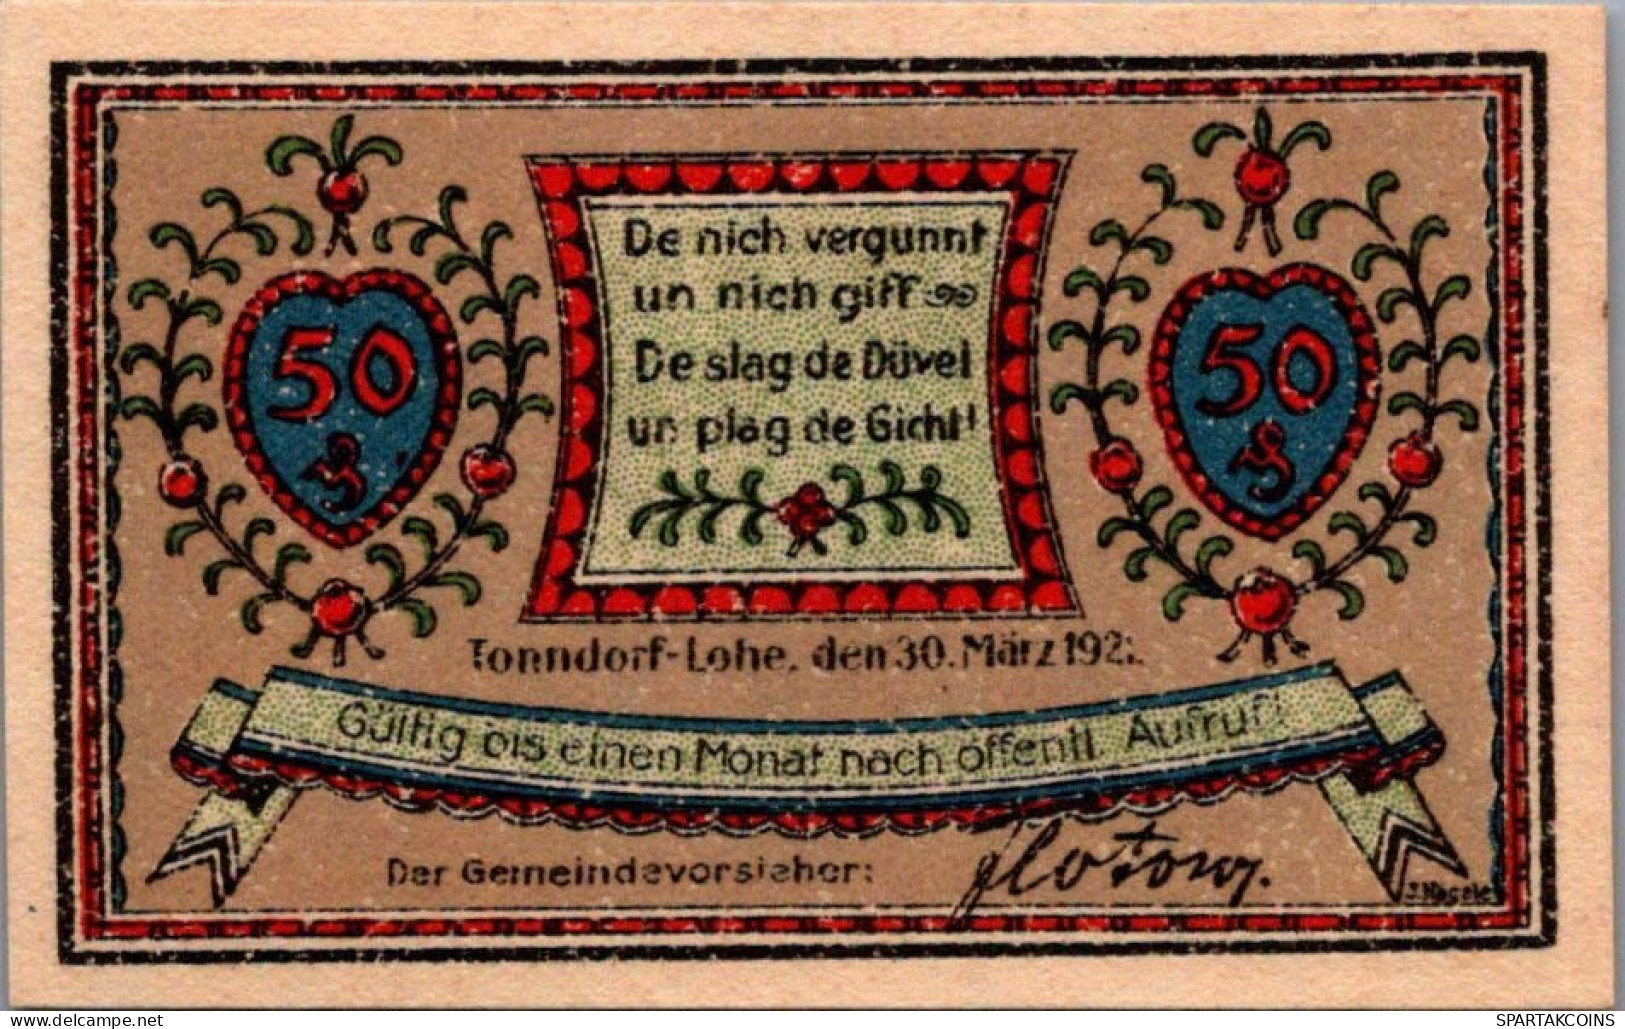 50 PFENNIG 1921 Stadt TONNDORF-LOHE Schleswig-Holstein DEUTSCHLAND #PG286 - [11] Local Banknote Issues